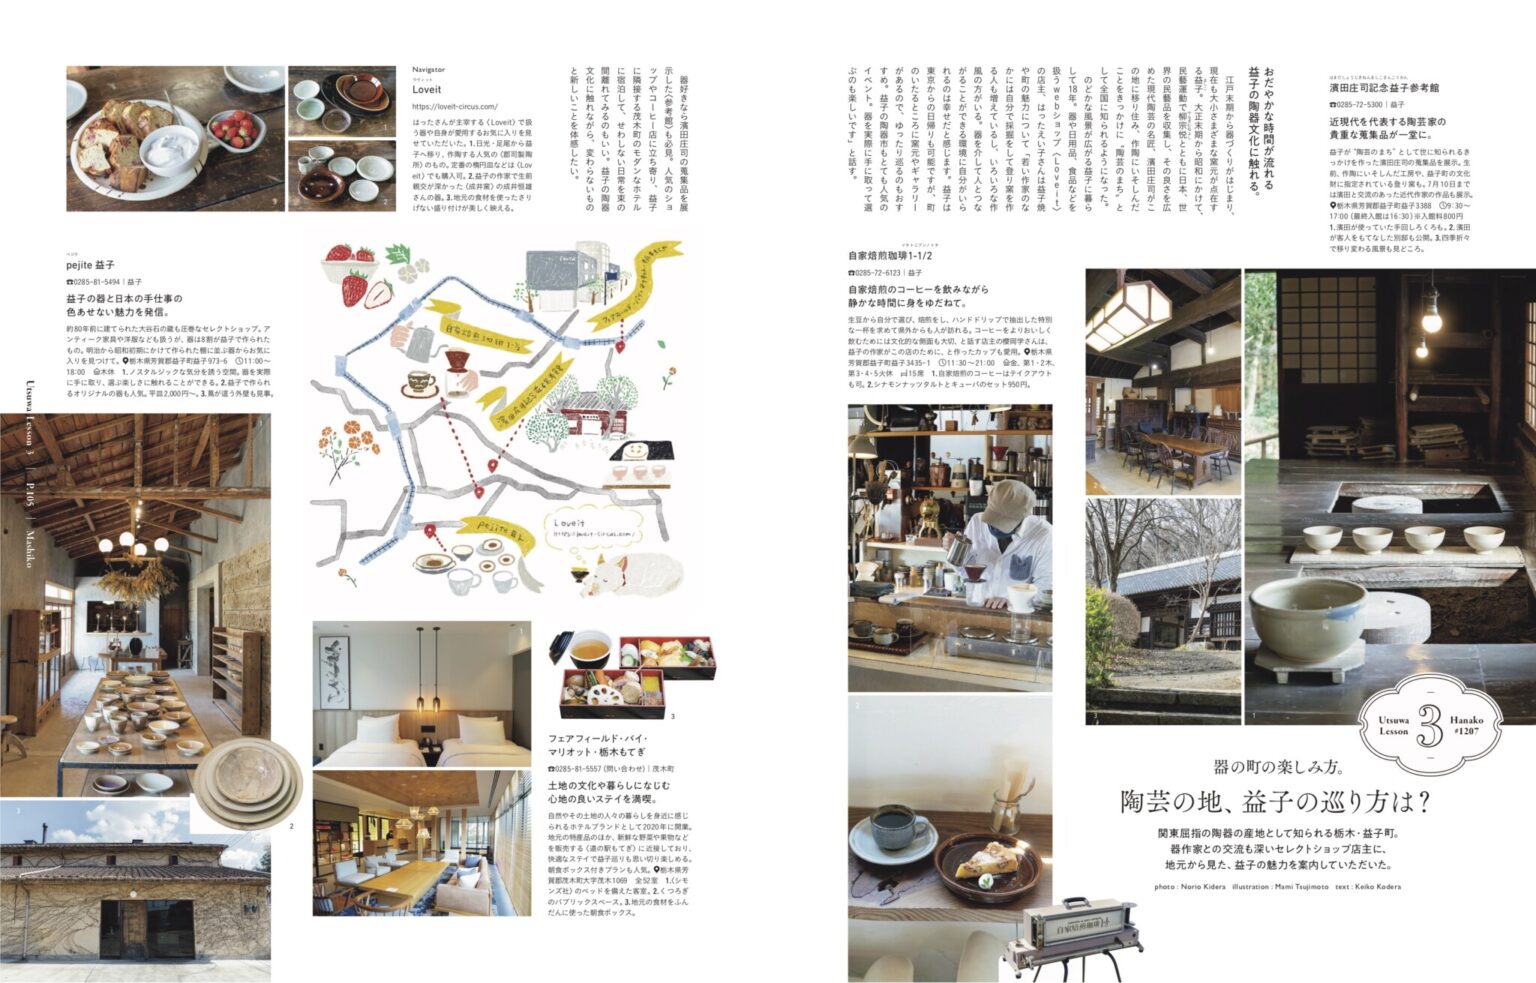 関東屈指の陶器の産地として知られる栃木・益子町。 器作家との交流も深いセレクトショップ〈Love it〉の店主・はったえい子さんによる、地元から見た益子の魅力を案内したページも。